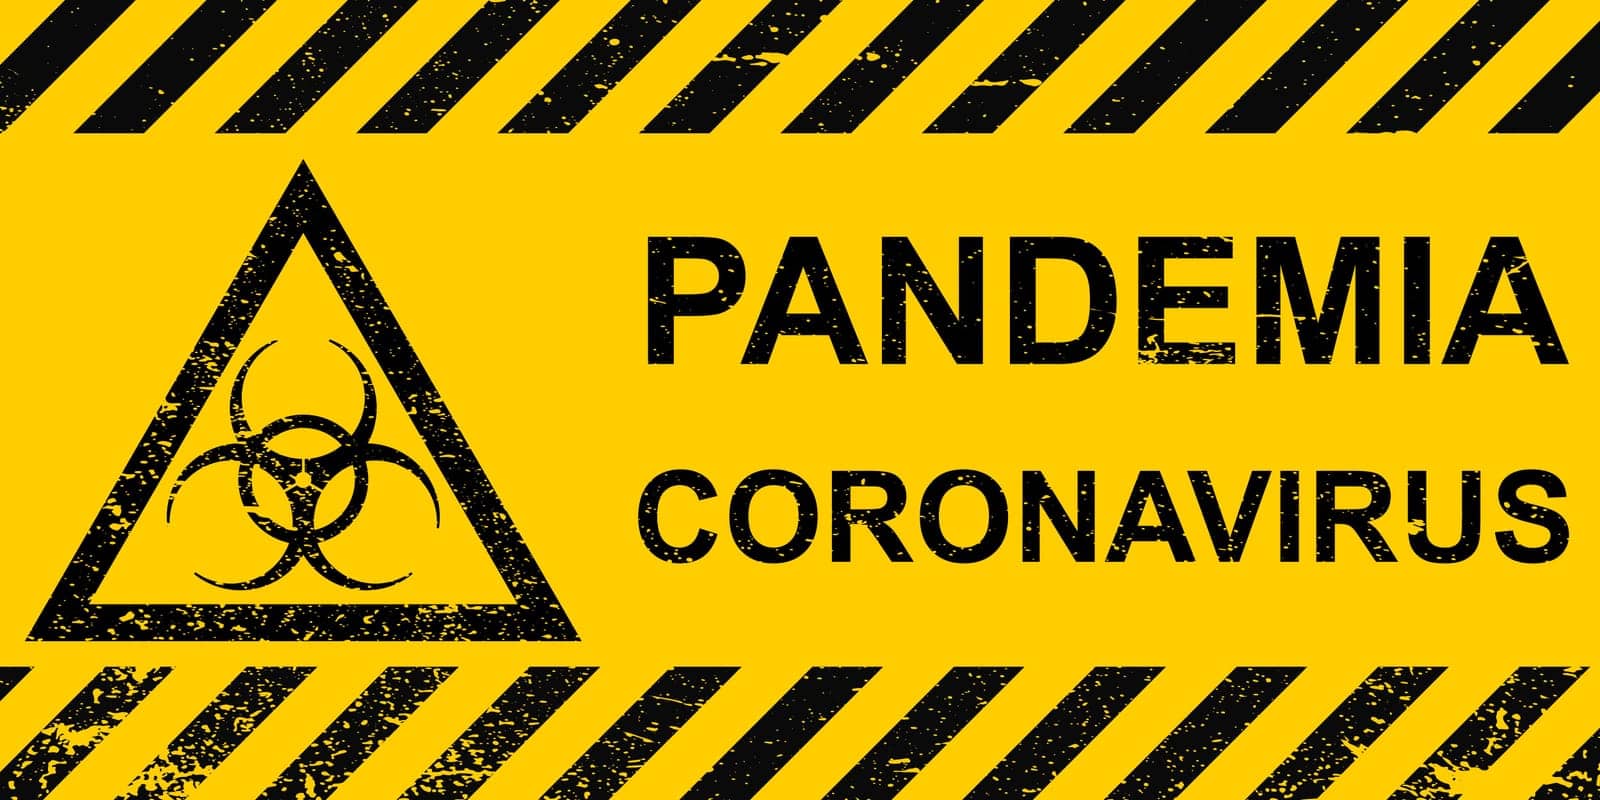 Banner pandemic coronavirus sign hazard yellow pandemic coronavirus striped banner